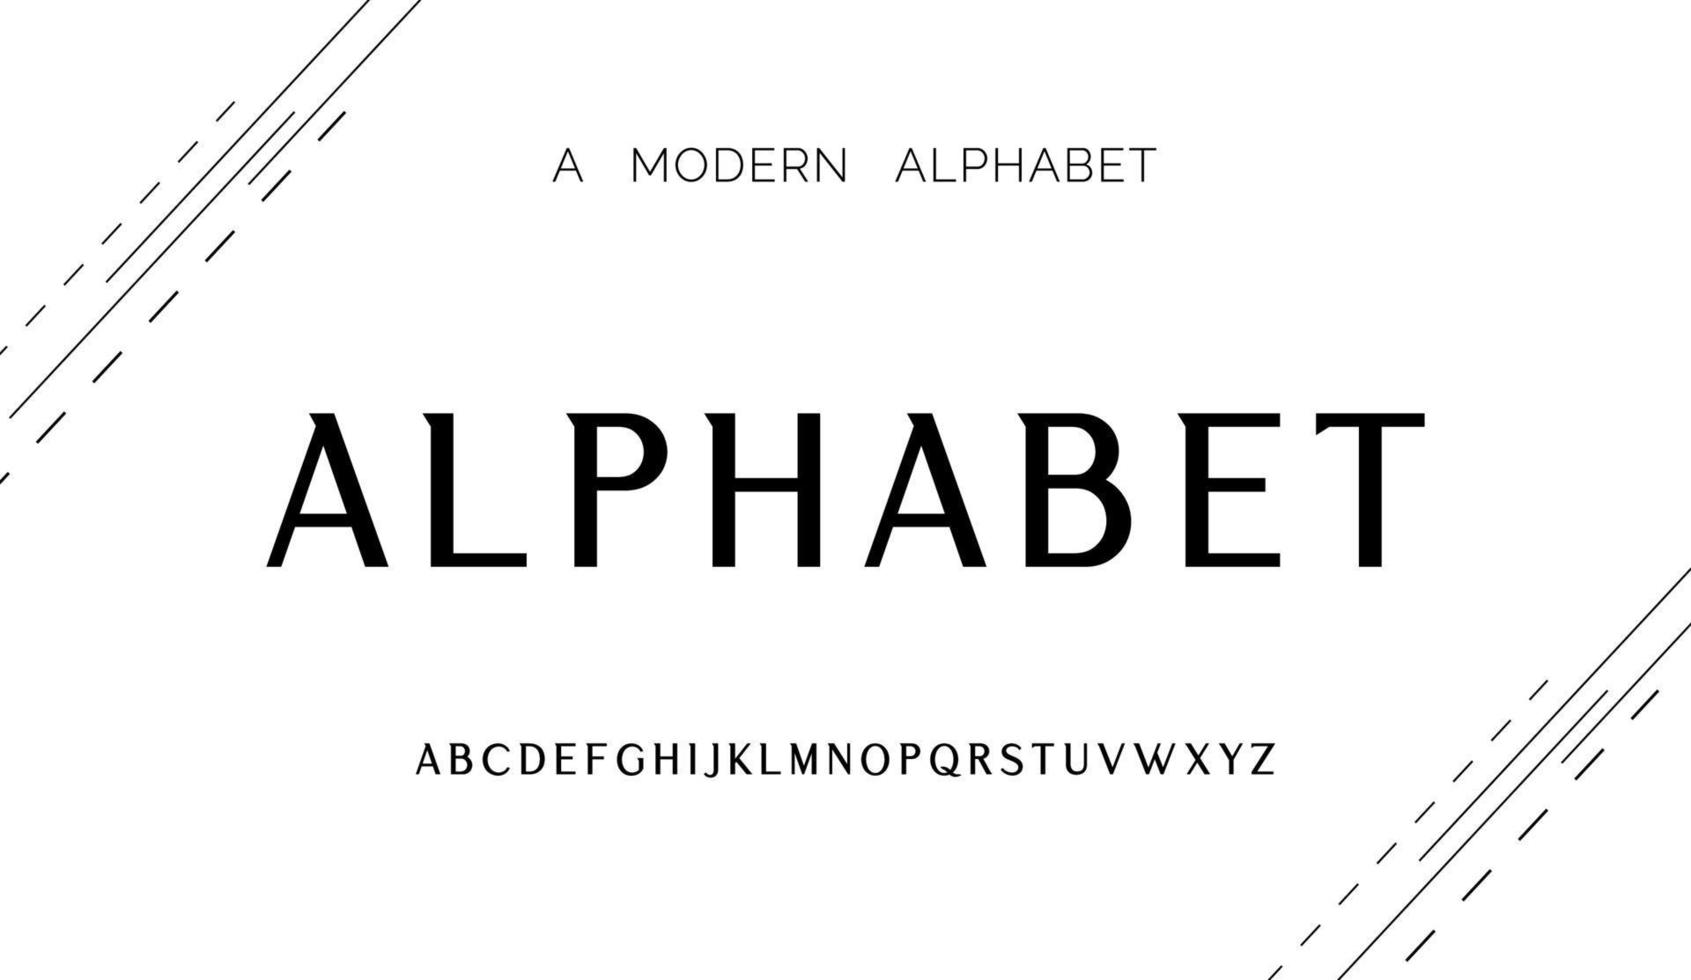 moderne abstracte alfabetlettertypen. typografietechnologie, elektronisch, film, digitaal, muziek, toekomst, logo creatief lettertype vector